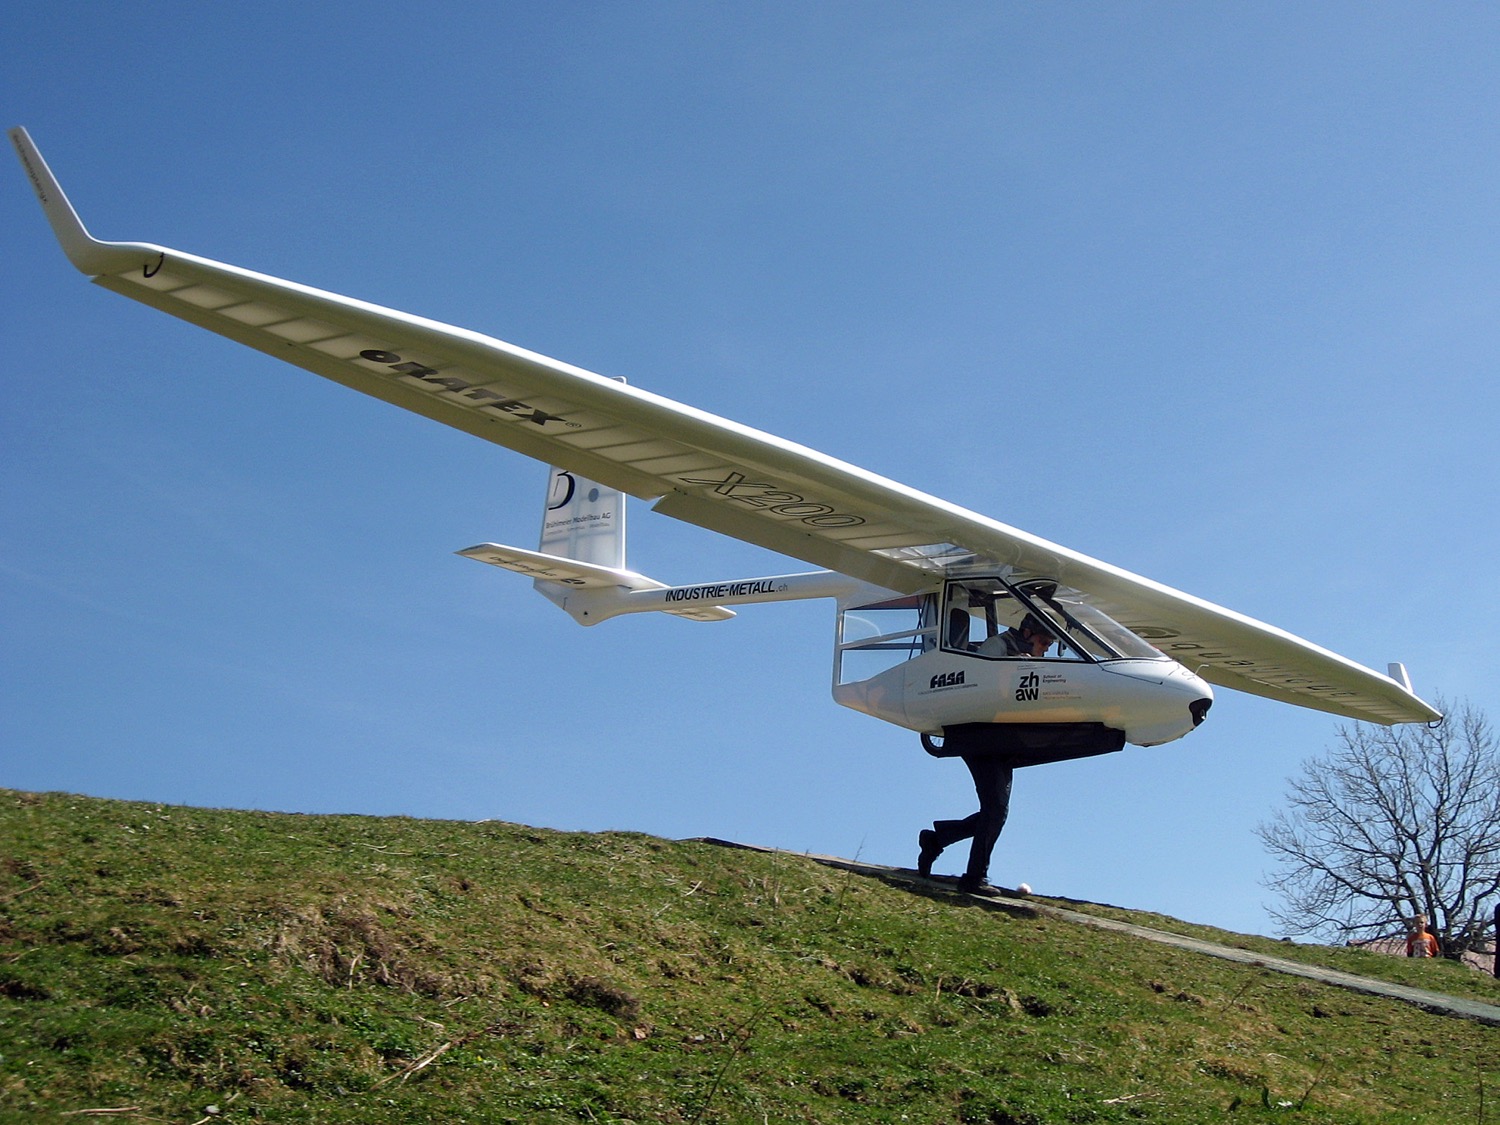 Das leichteste Segelflugzeug der Welt (61 kg). Auf zu neuen Horizonten!